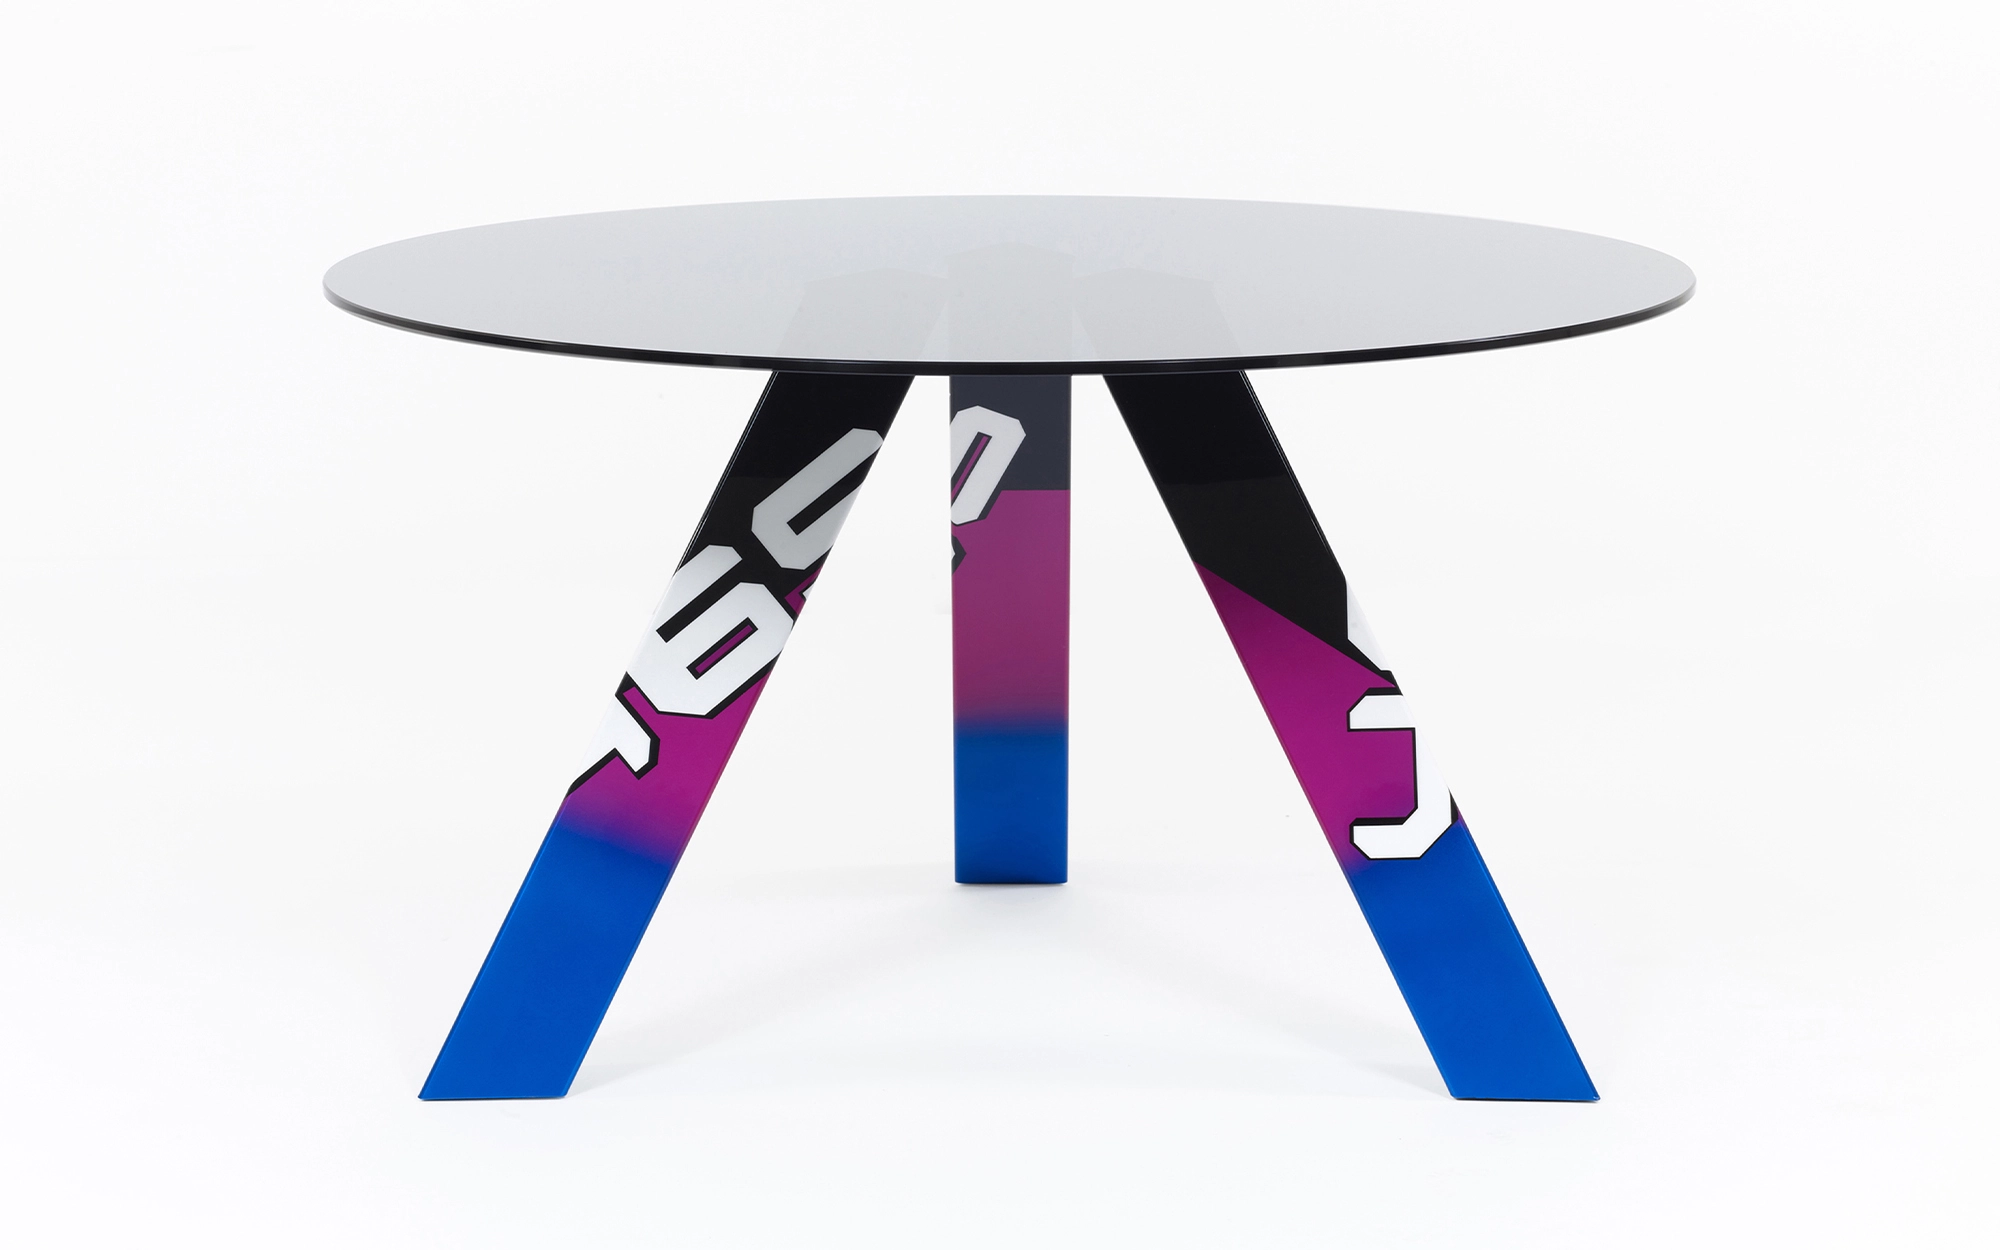 465 Table - Konstantin Grcic - Seating - Galerie kreo